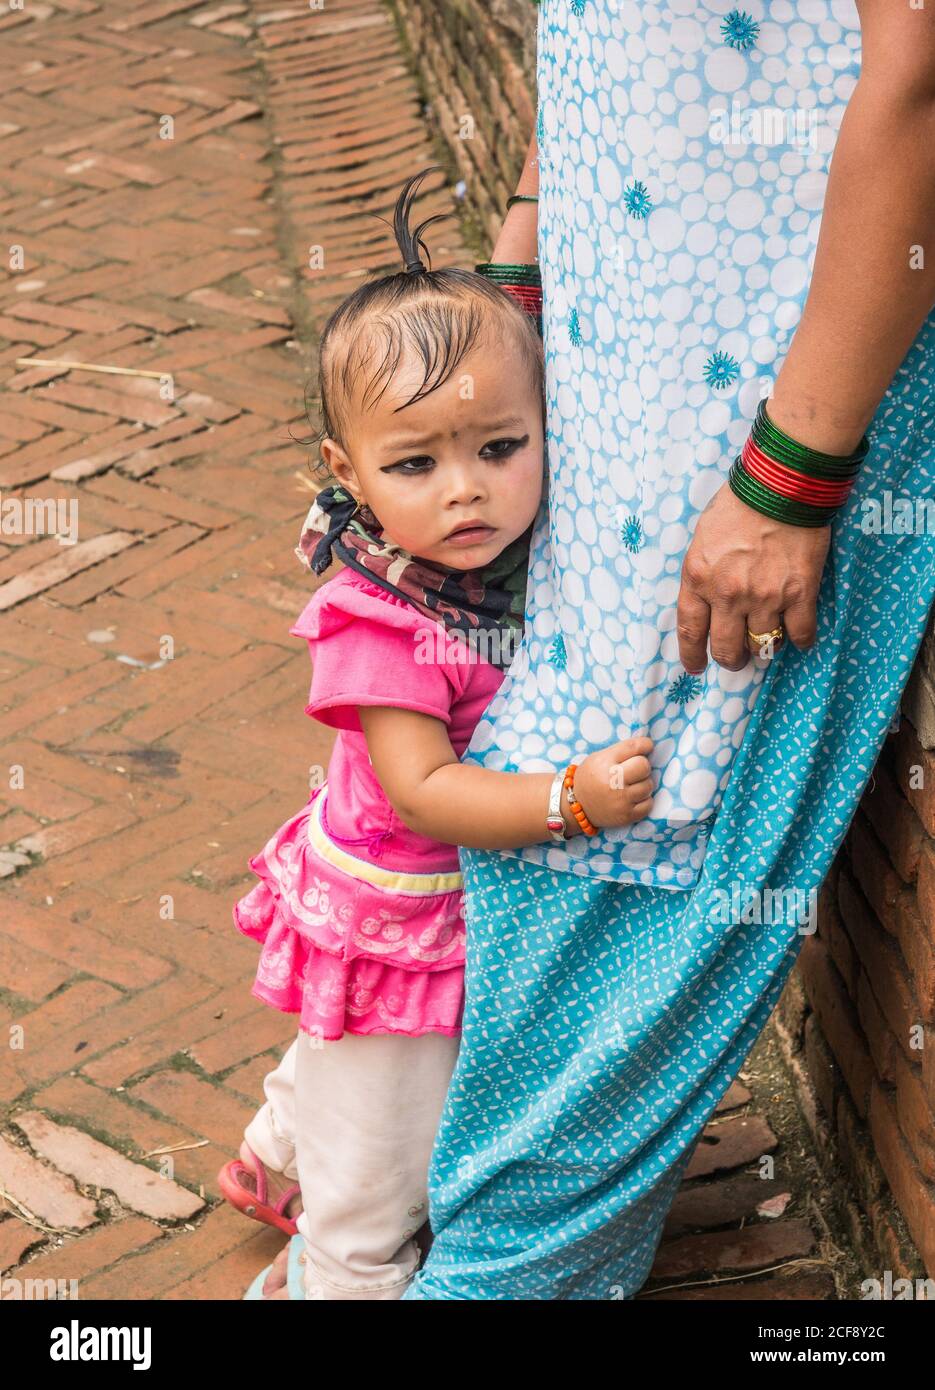 NEPAL, BHAKTAPUR - 19. AUGUST 2014: Seitenansicht eines kleinen ängstlichen indischen Kindes, das die Beine der Mutter auf der Straße hält Stockfoto